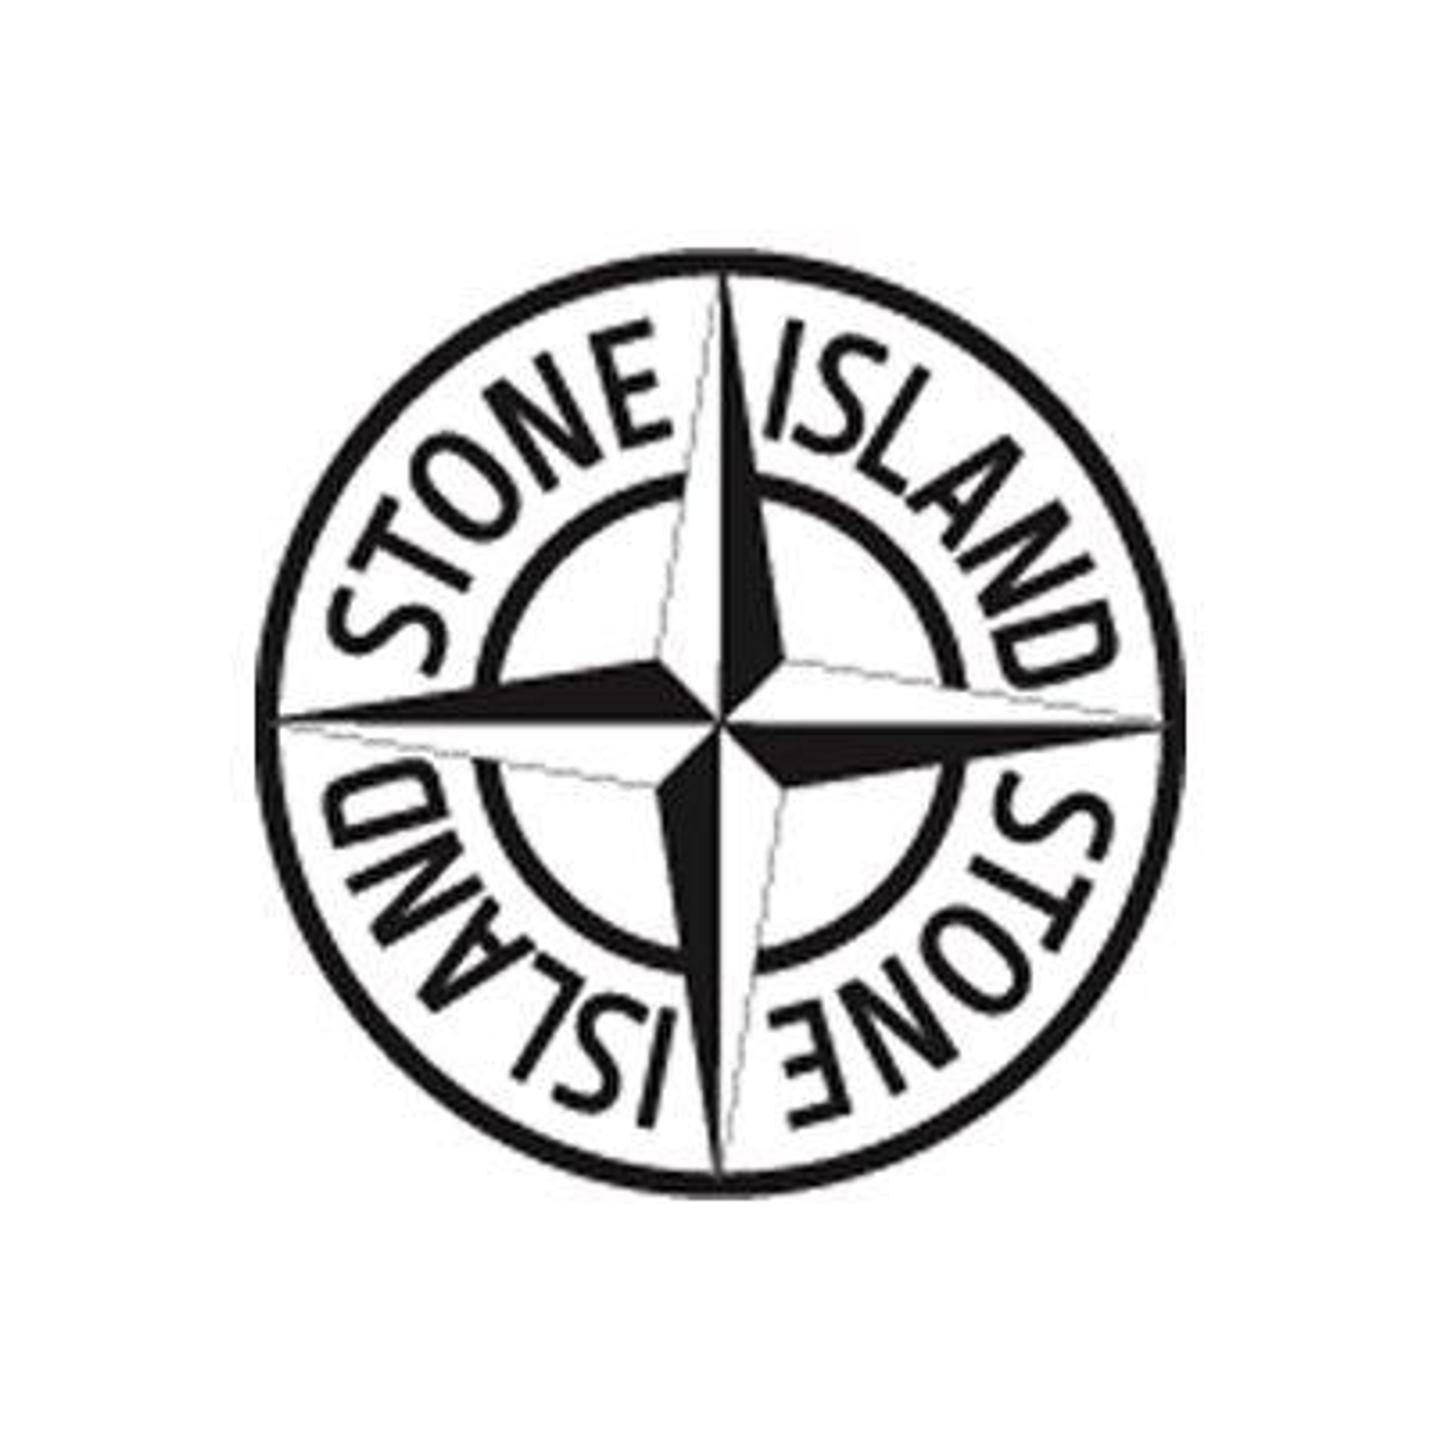 Island значок. Значок стон Исланд. Стикеры стон Айленд. Стон Айленд логотип черно белый. Стон Исланд стоник.